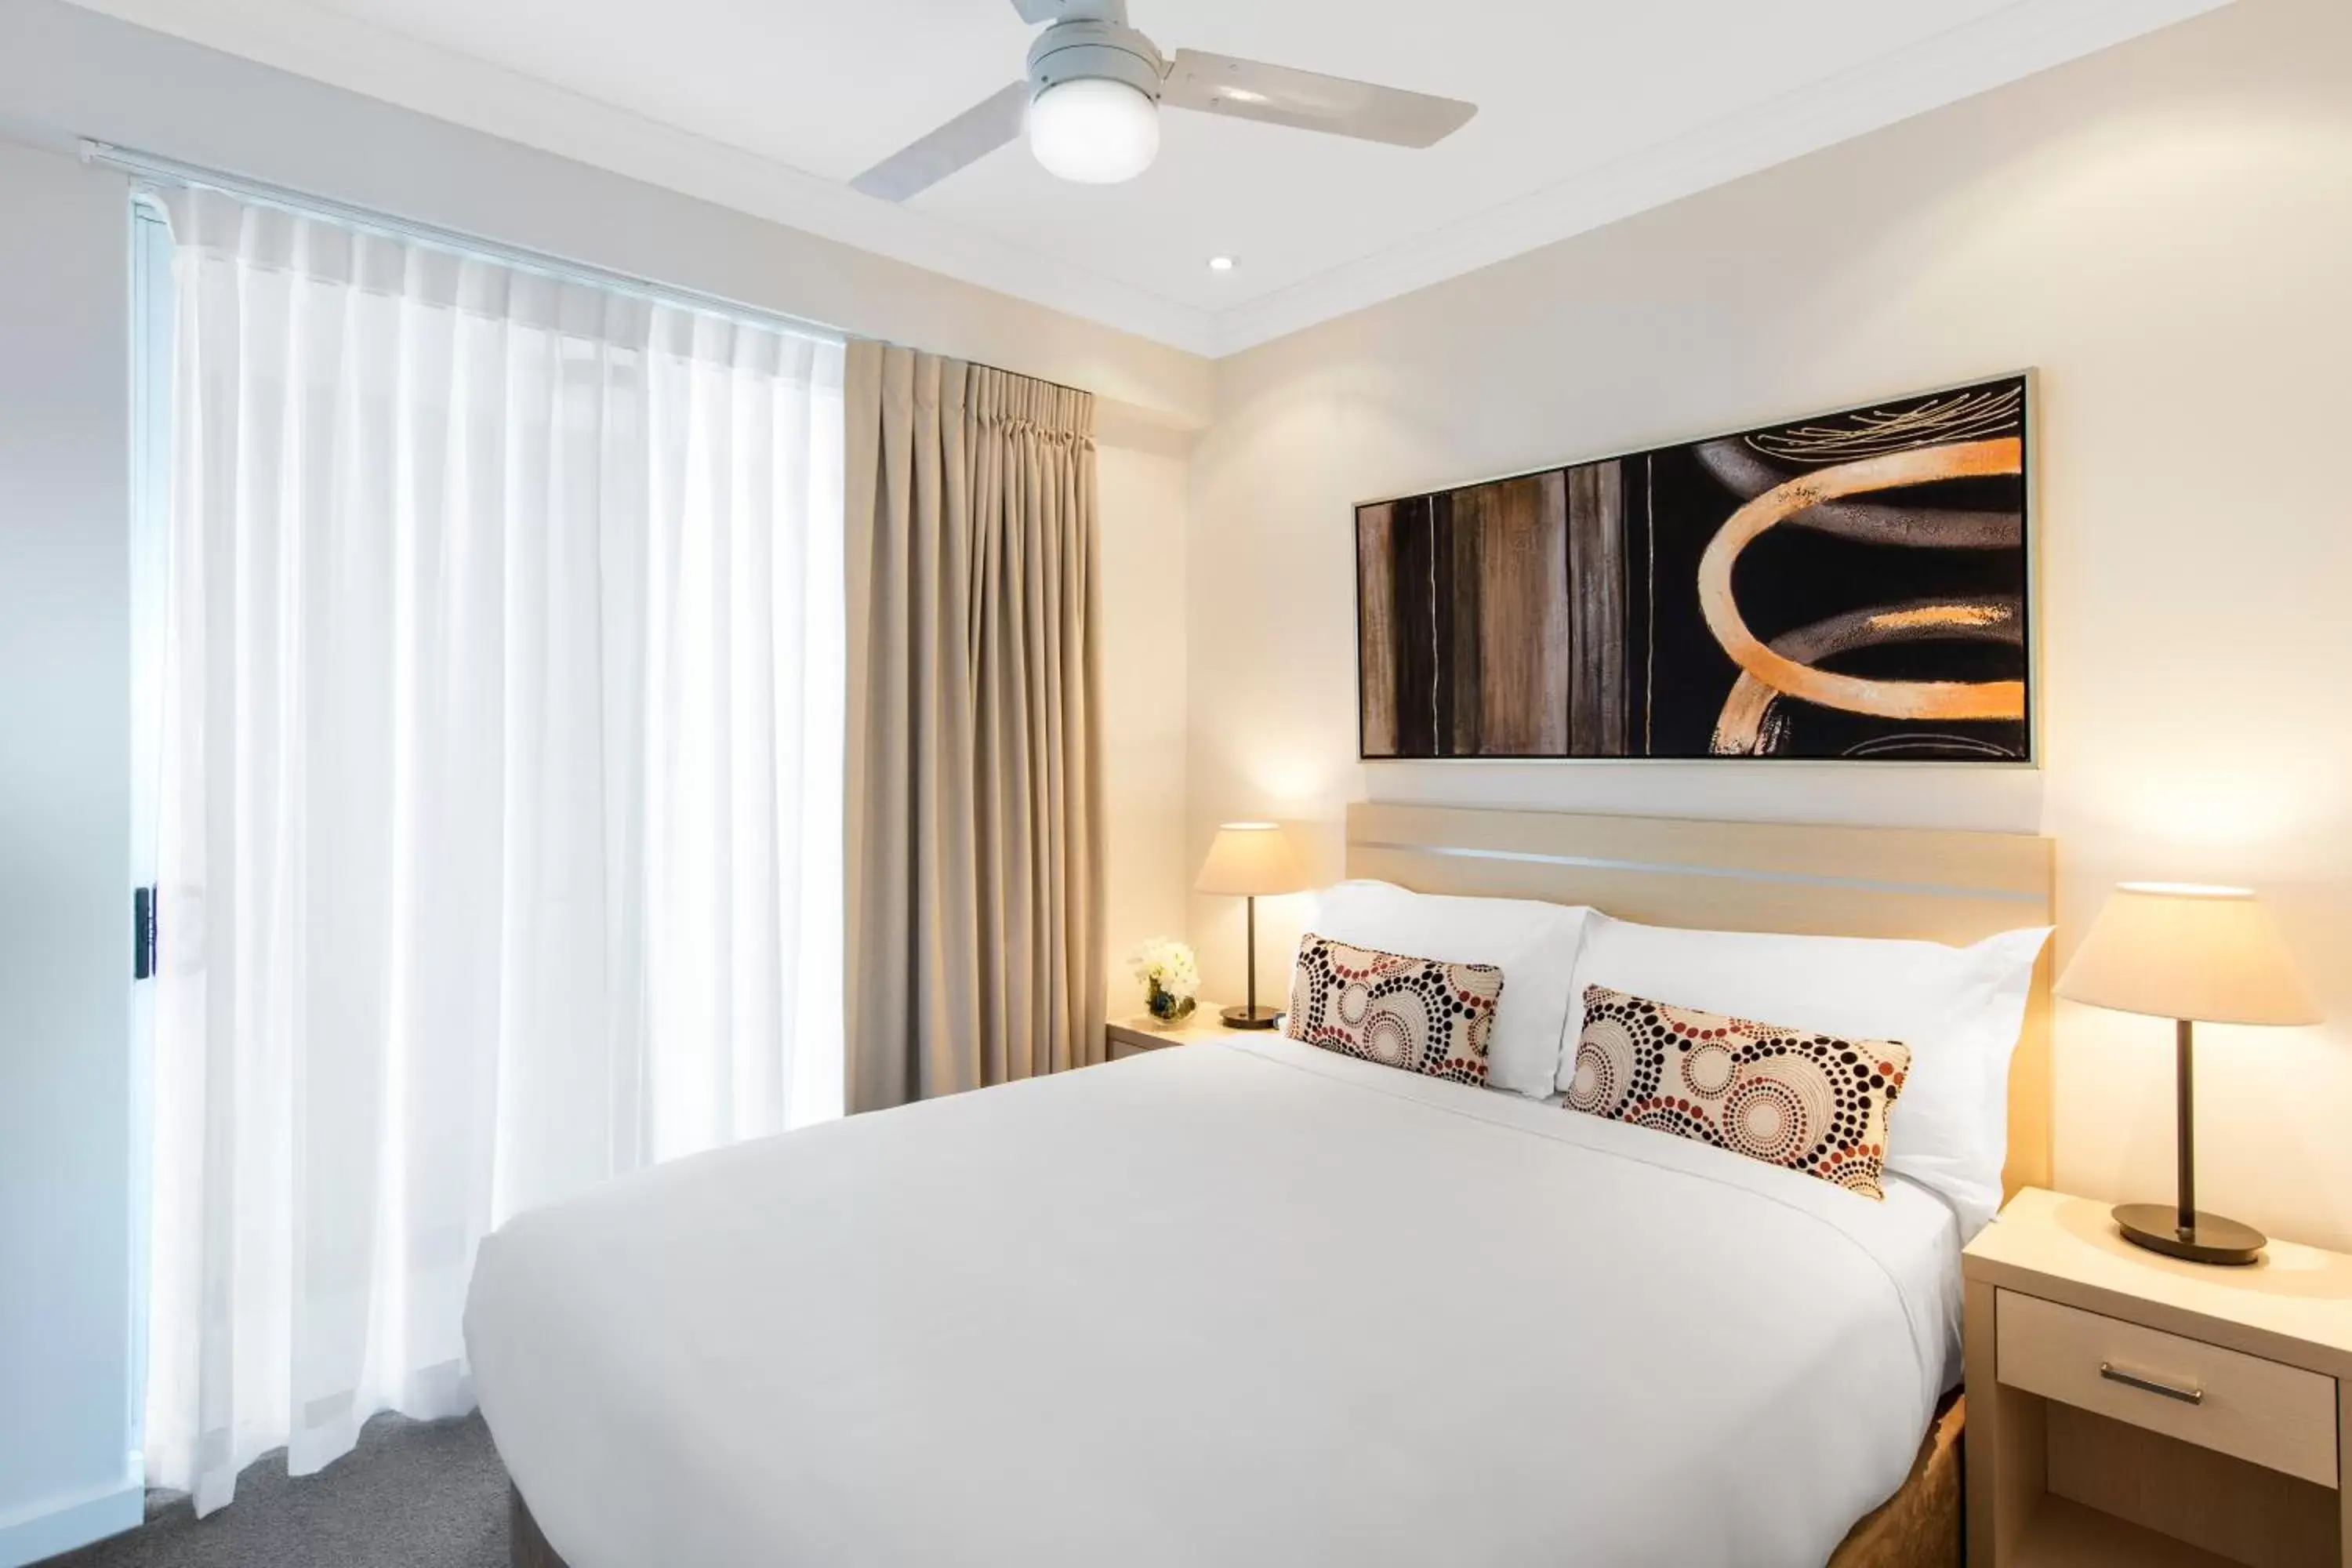 Bedroom, Room Photo in Oaks Brisbane Mews Suites